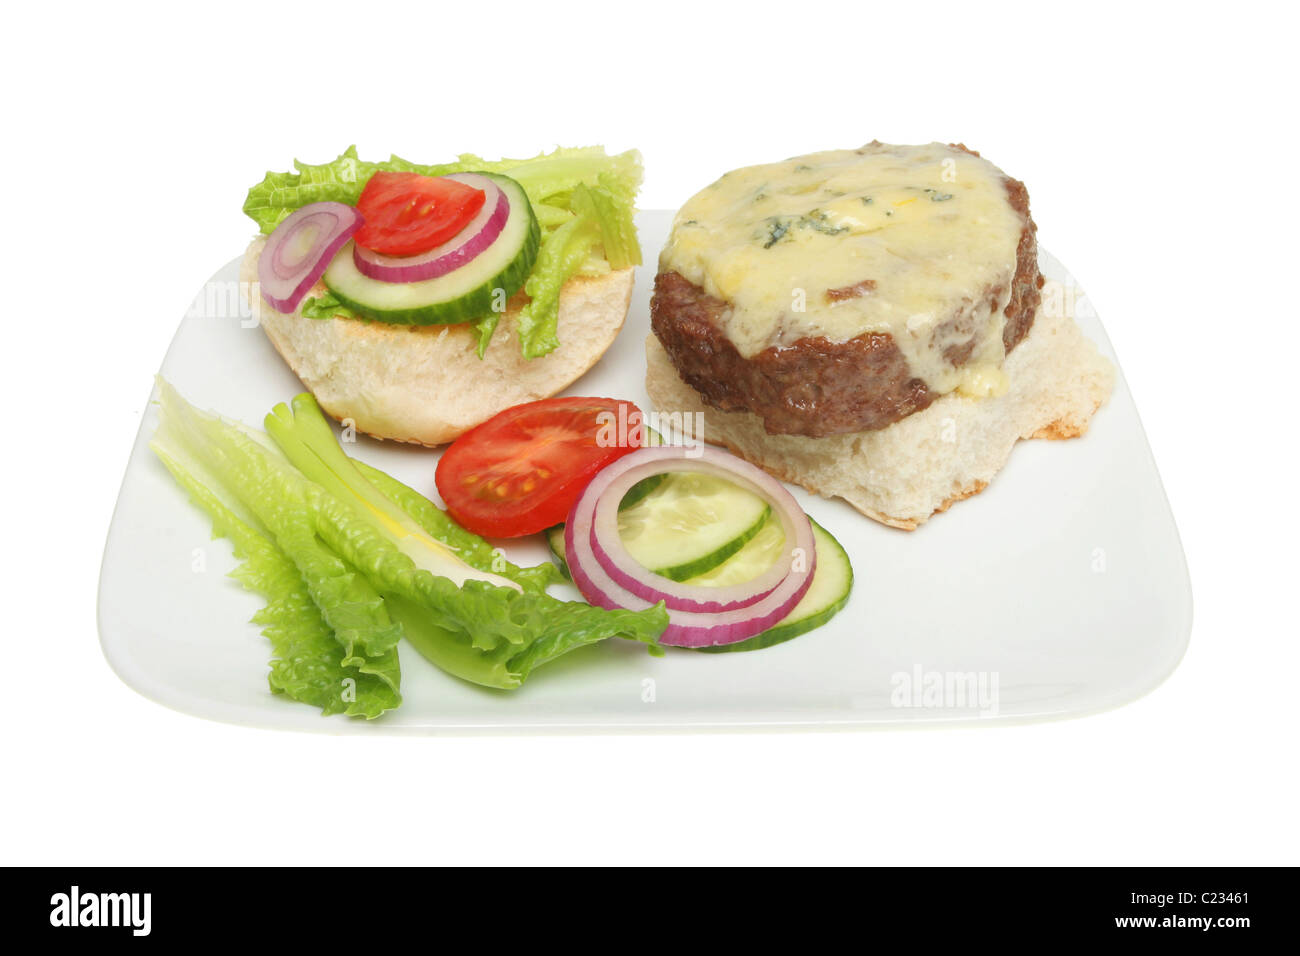 Offenen Cheeseburger und Salat garnieren auf einem Teller Stockfoto